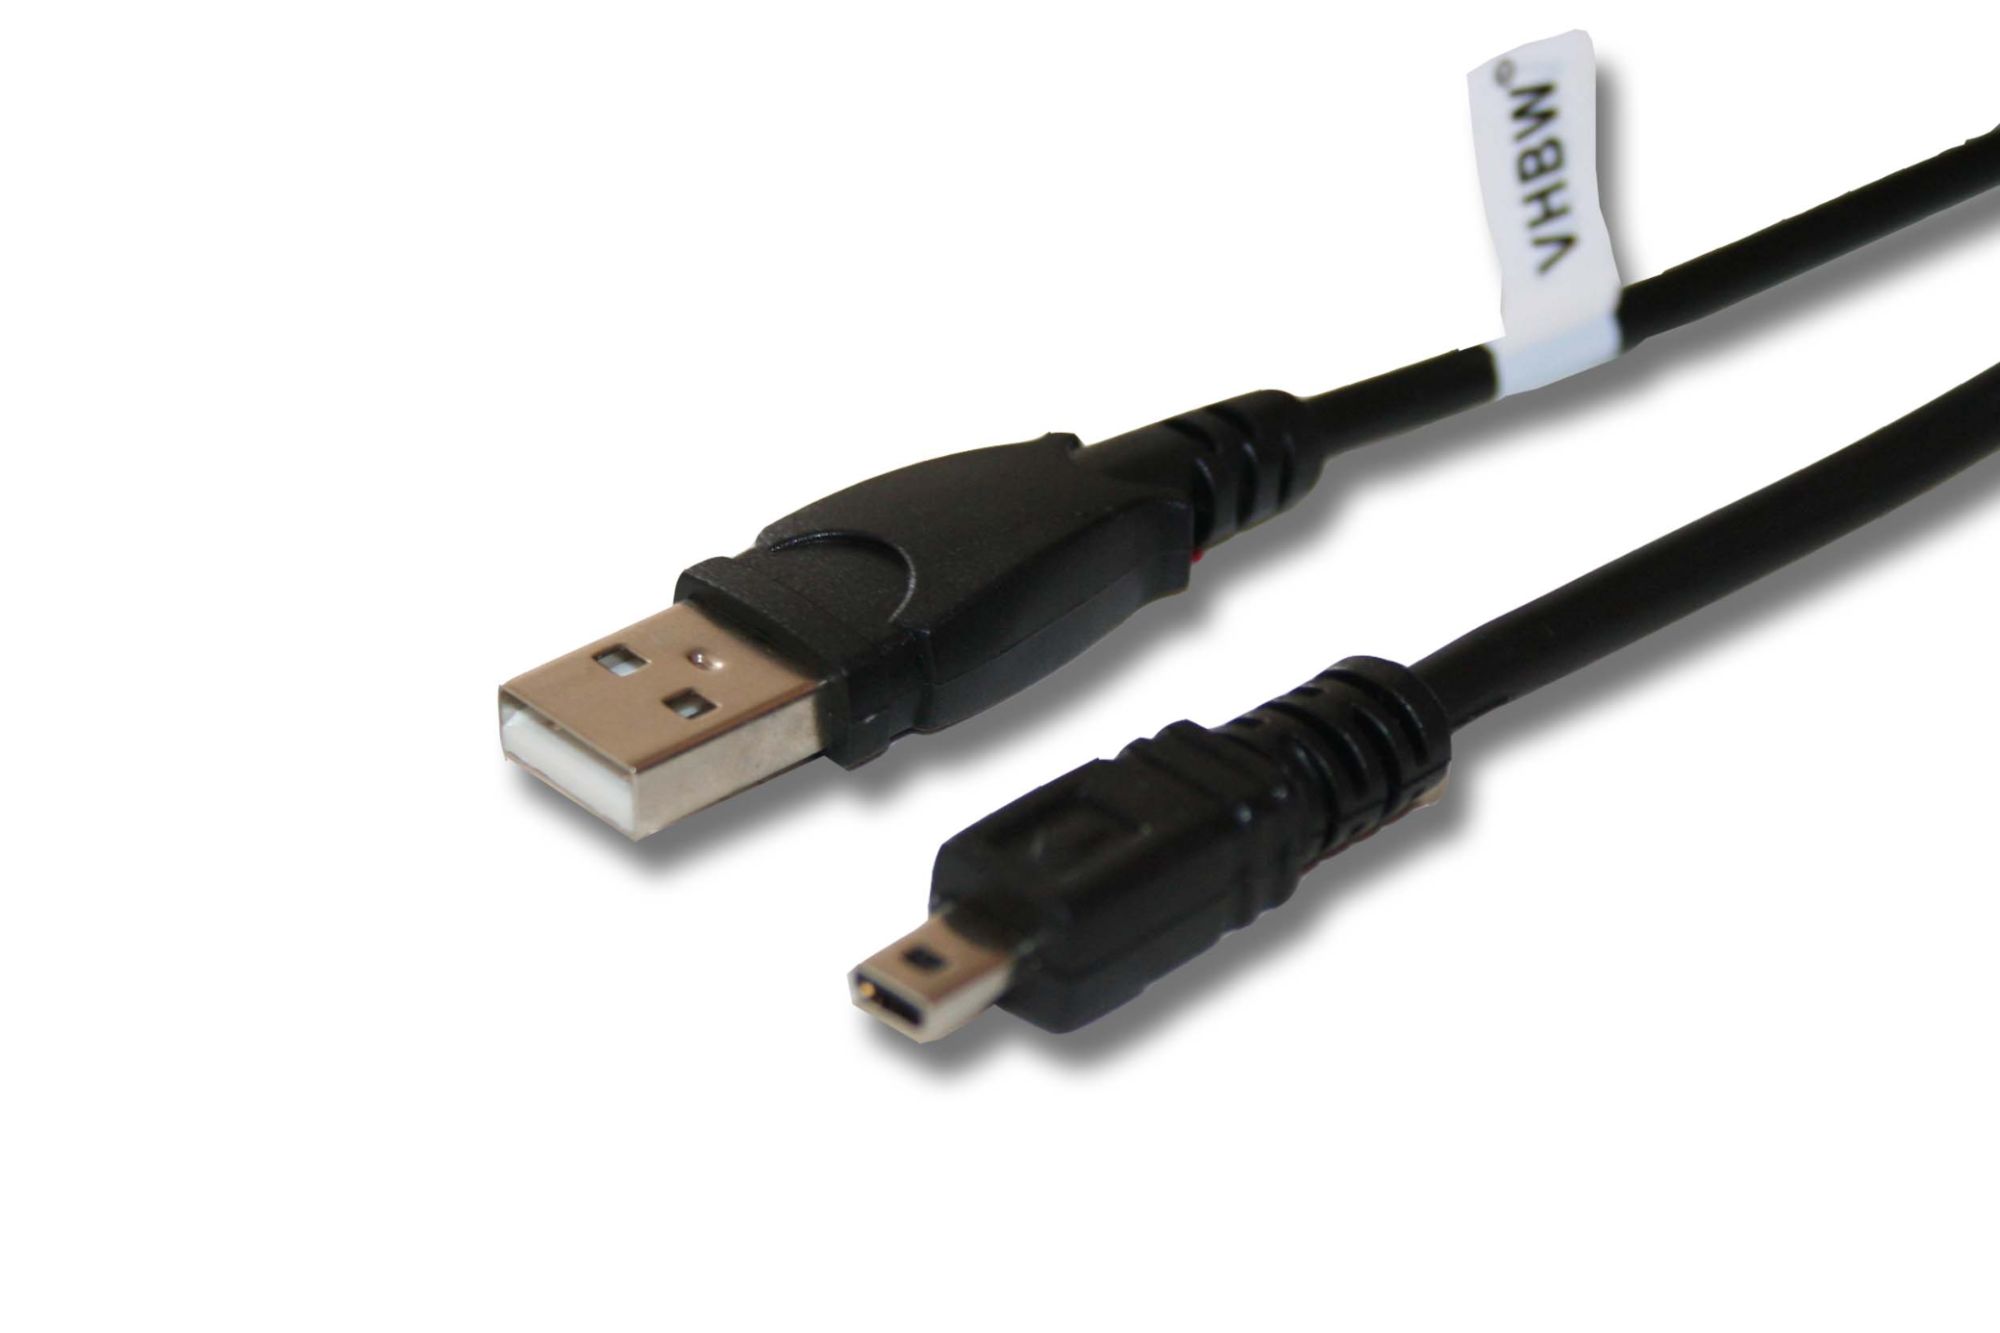 vhbw Câble de données USB (Standard USB Type A) 150cm compatible avec Panasonic Lumix DMC-FZ72, DMC-TZ71, DMC-TZ61, DMC-TZ58 appareil photo